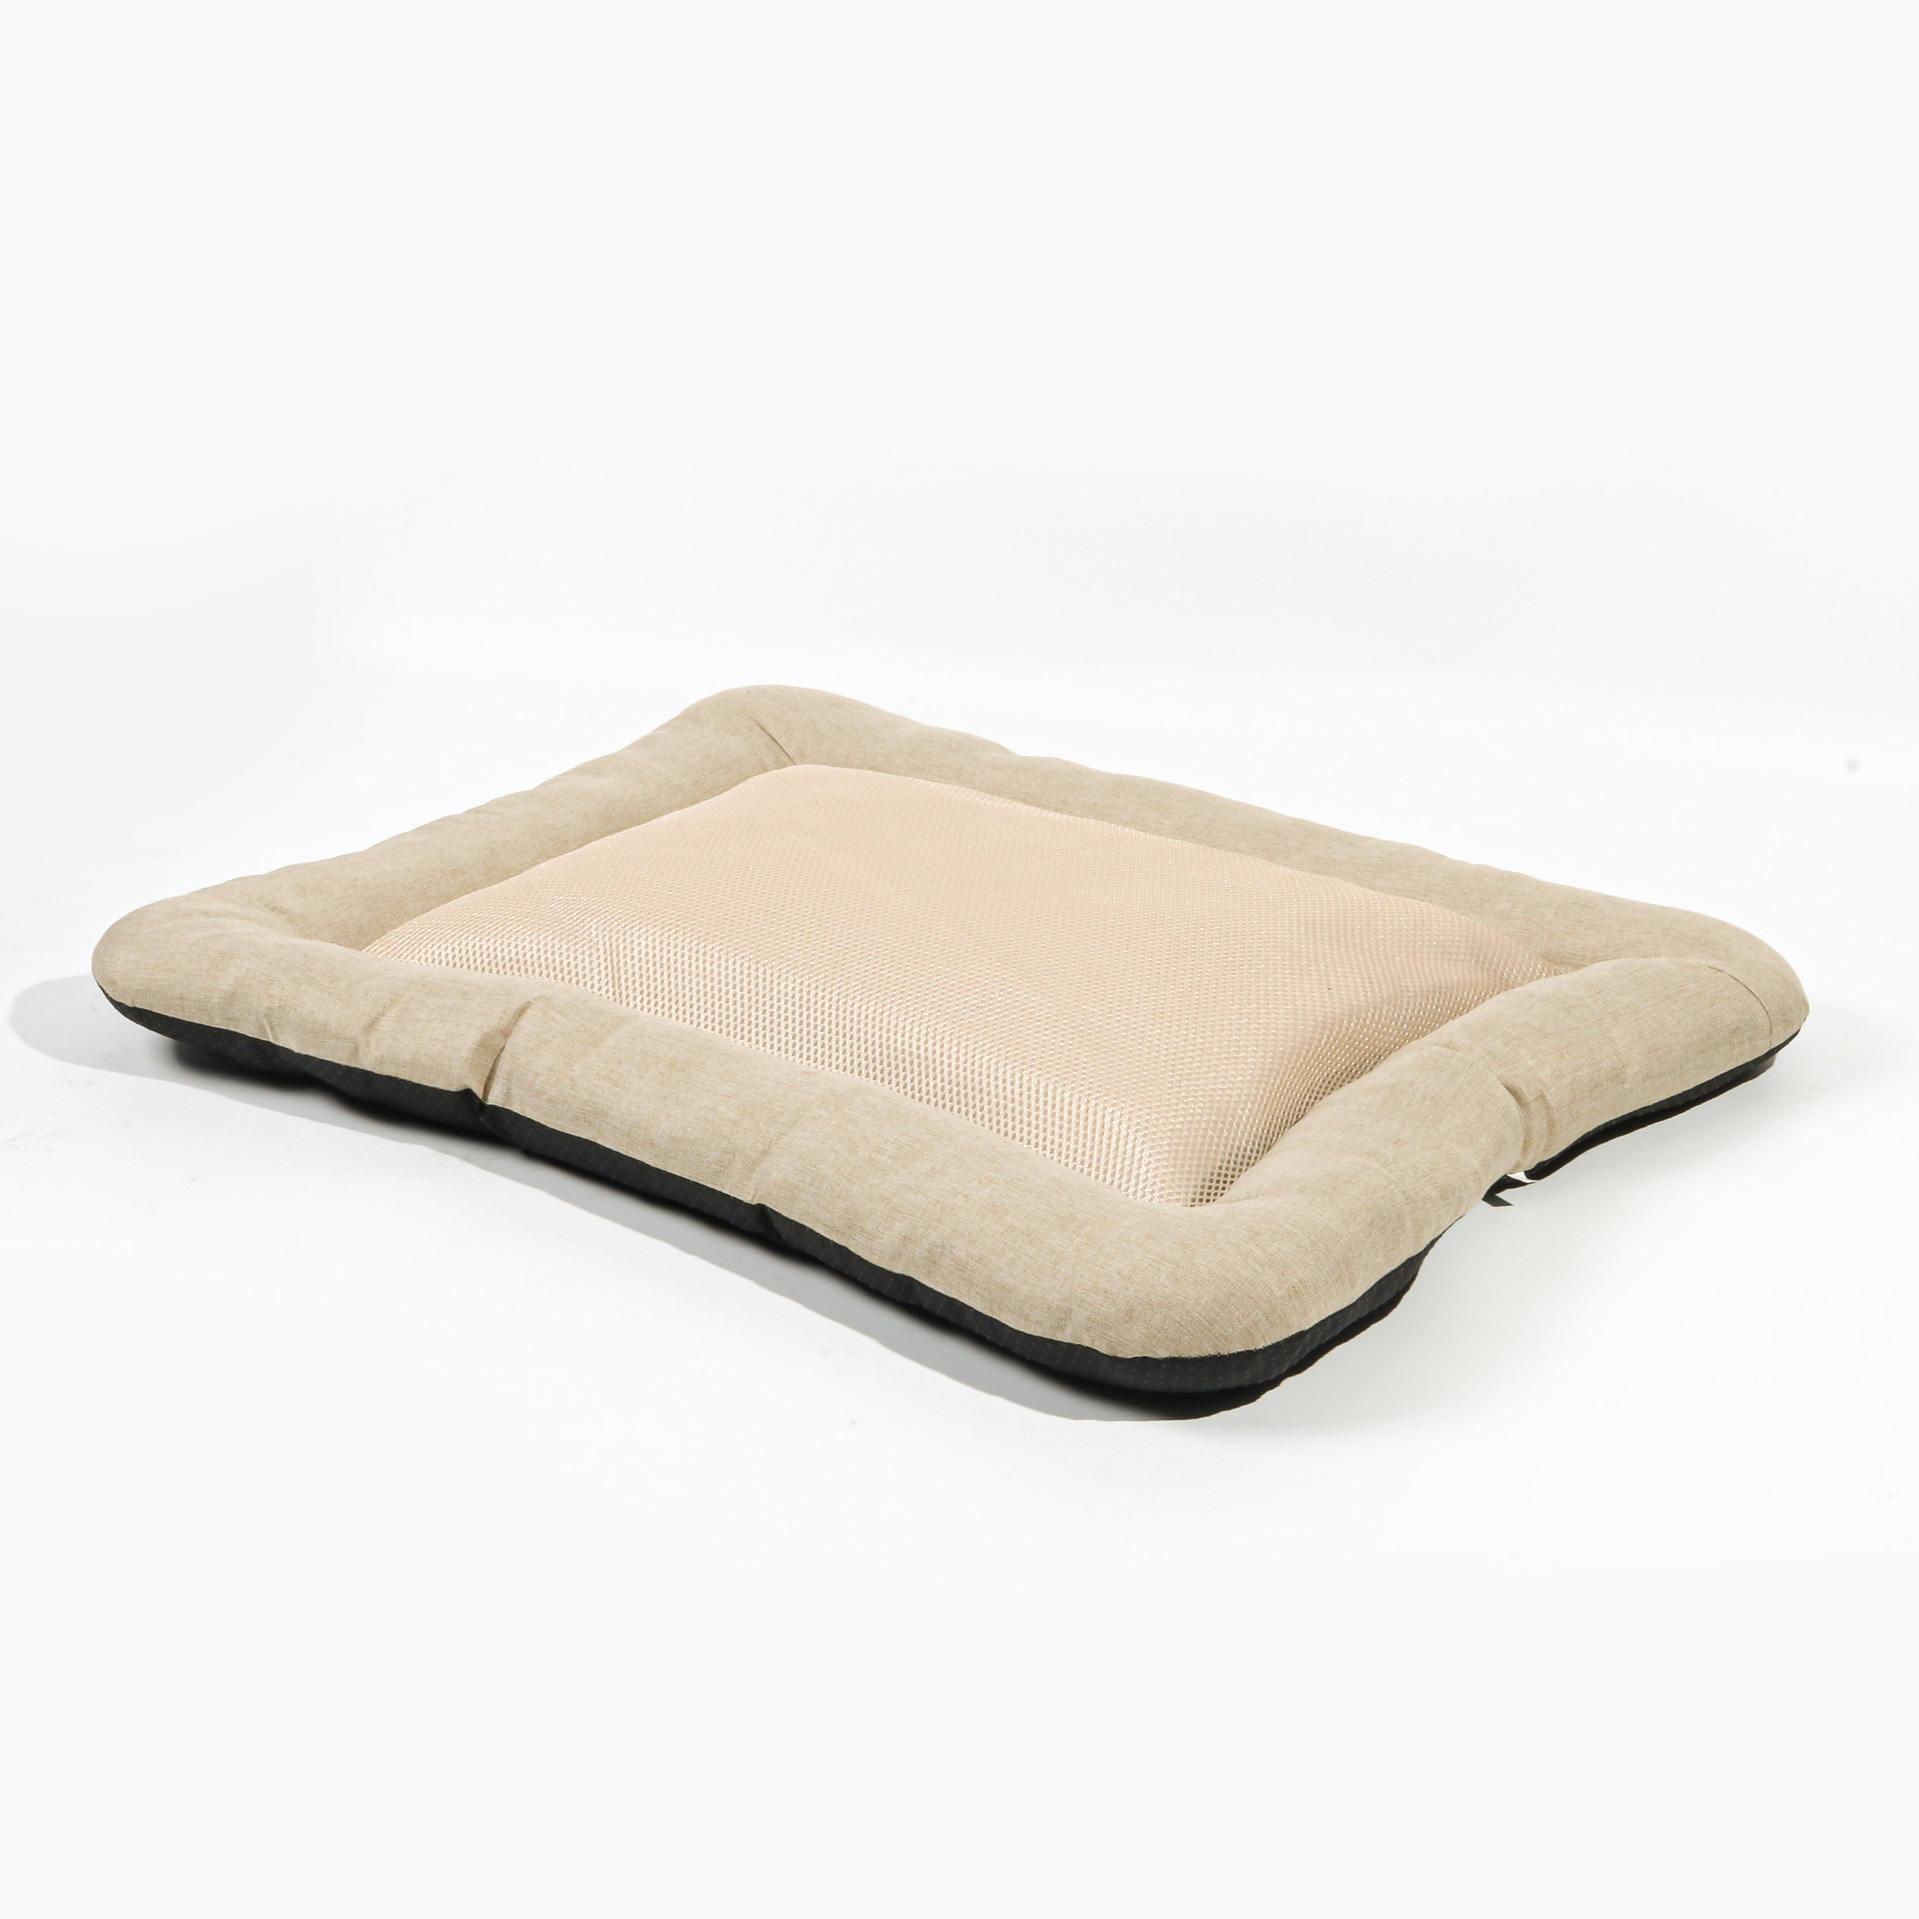 Bite Resistant Factory Wholesale Pet Supplies Bed Washable Non Slip Pet Dog Beds